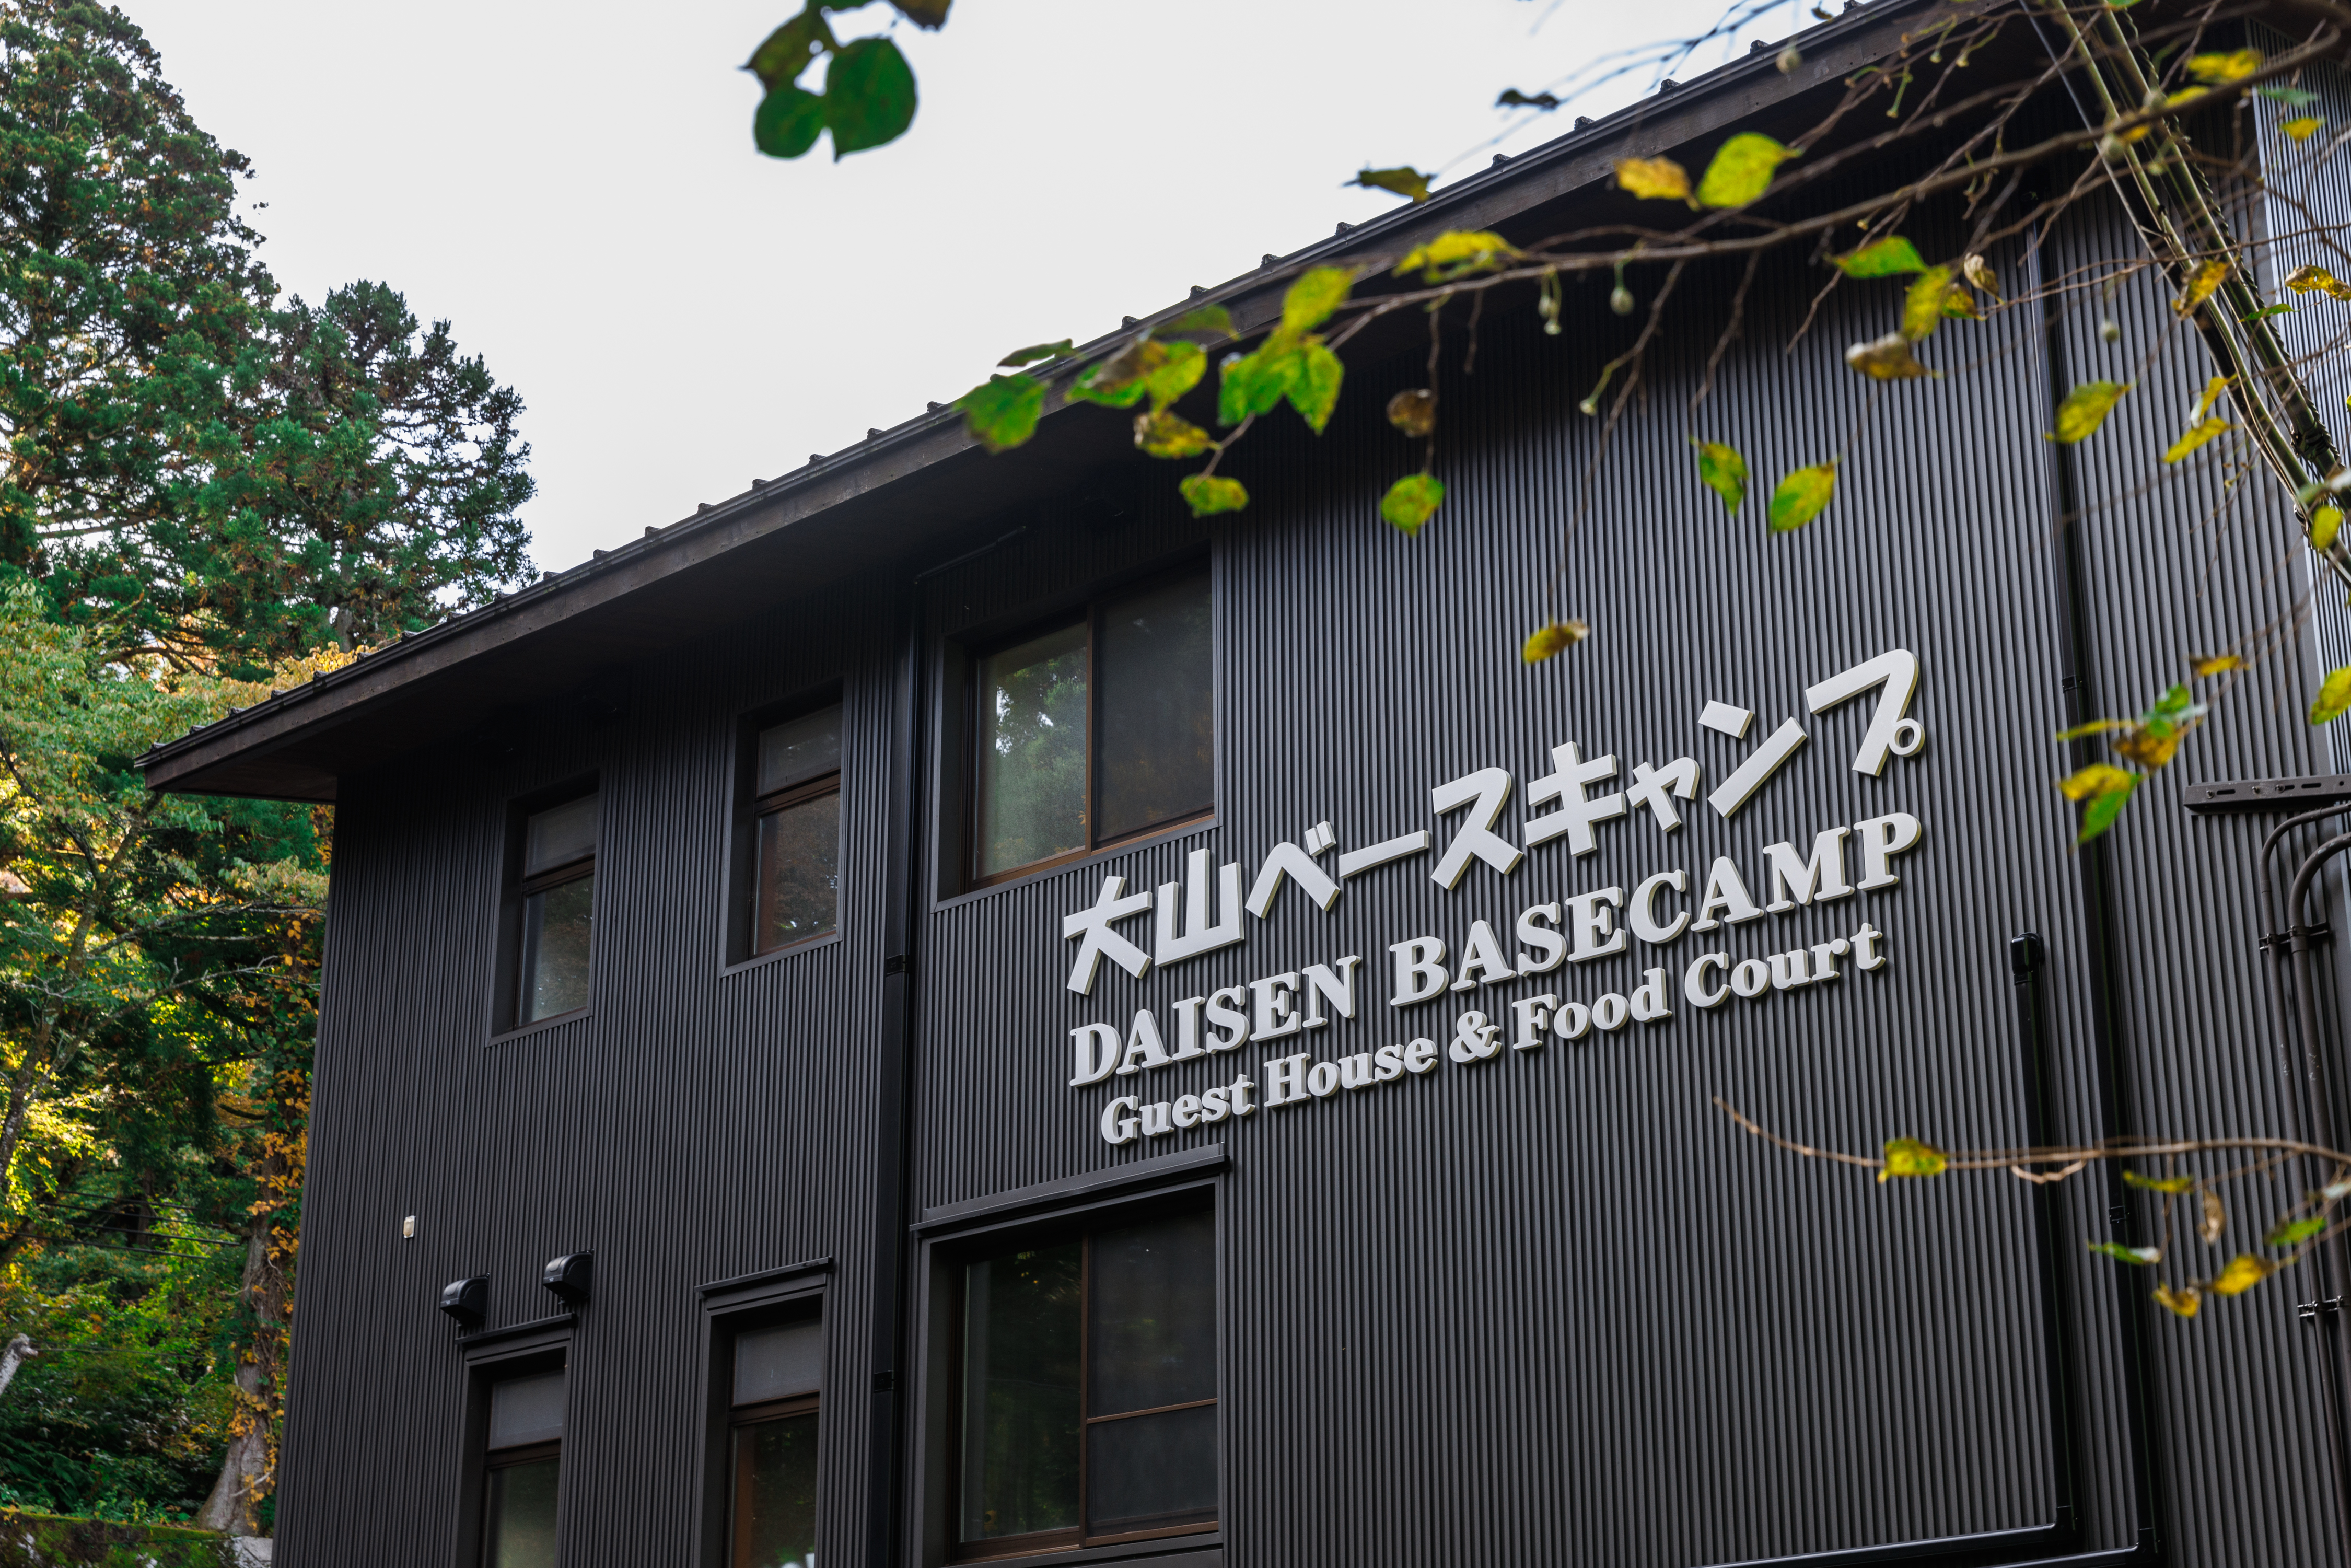 Daisen Basecamp